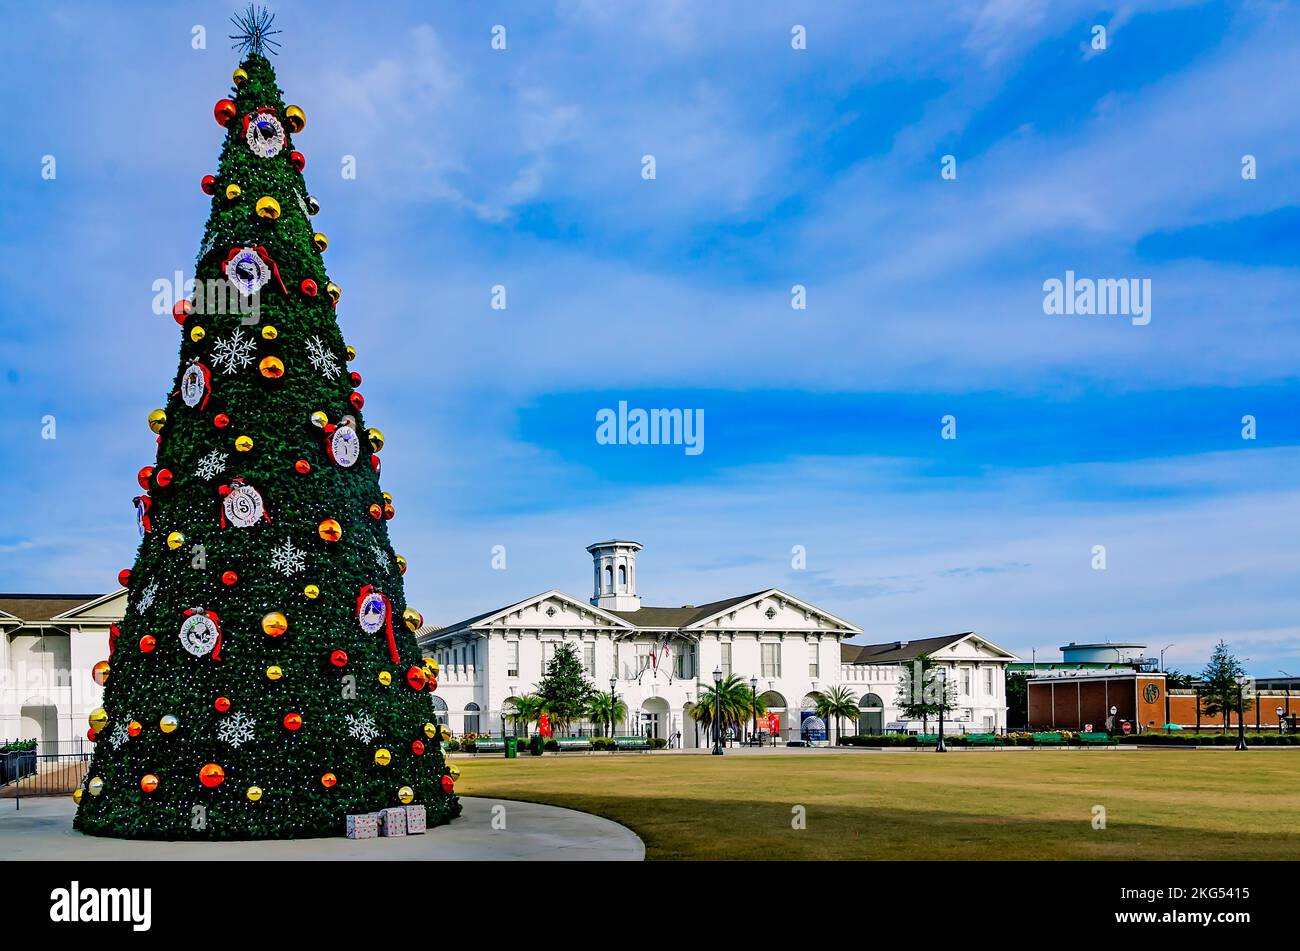 El árbol de Navidad de la ciudad se exhibe en Mardi Gras Park, el 20 de noviembre de 2022, en Mobile, Alabama. En el fondo es el Museo de Historia de Mobile. Foto de stock